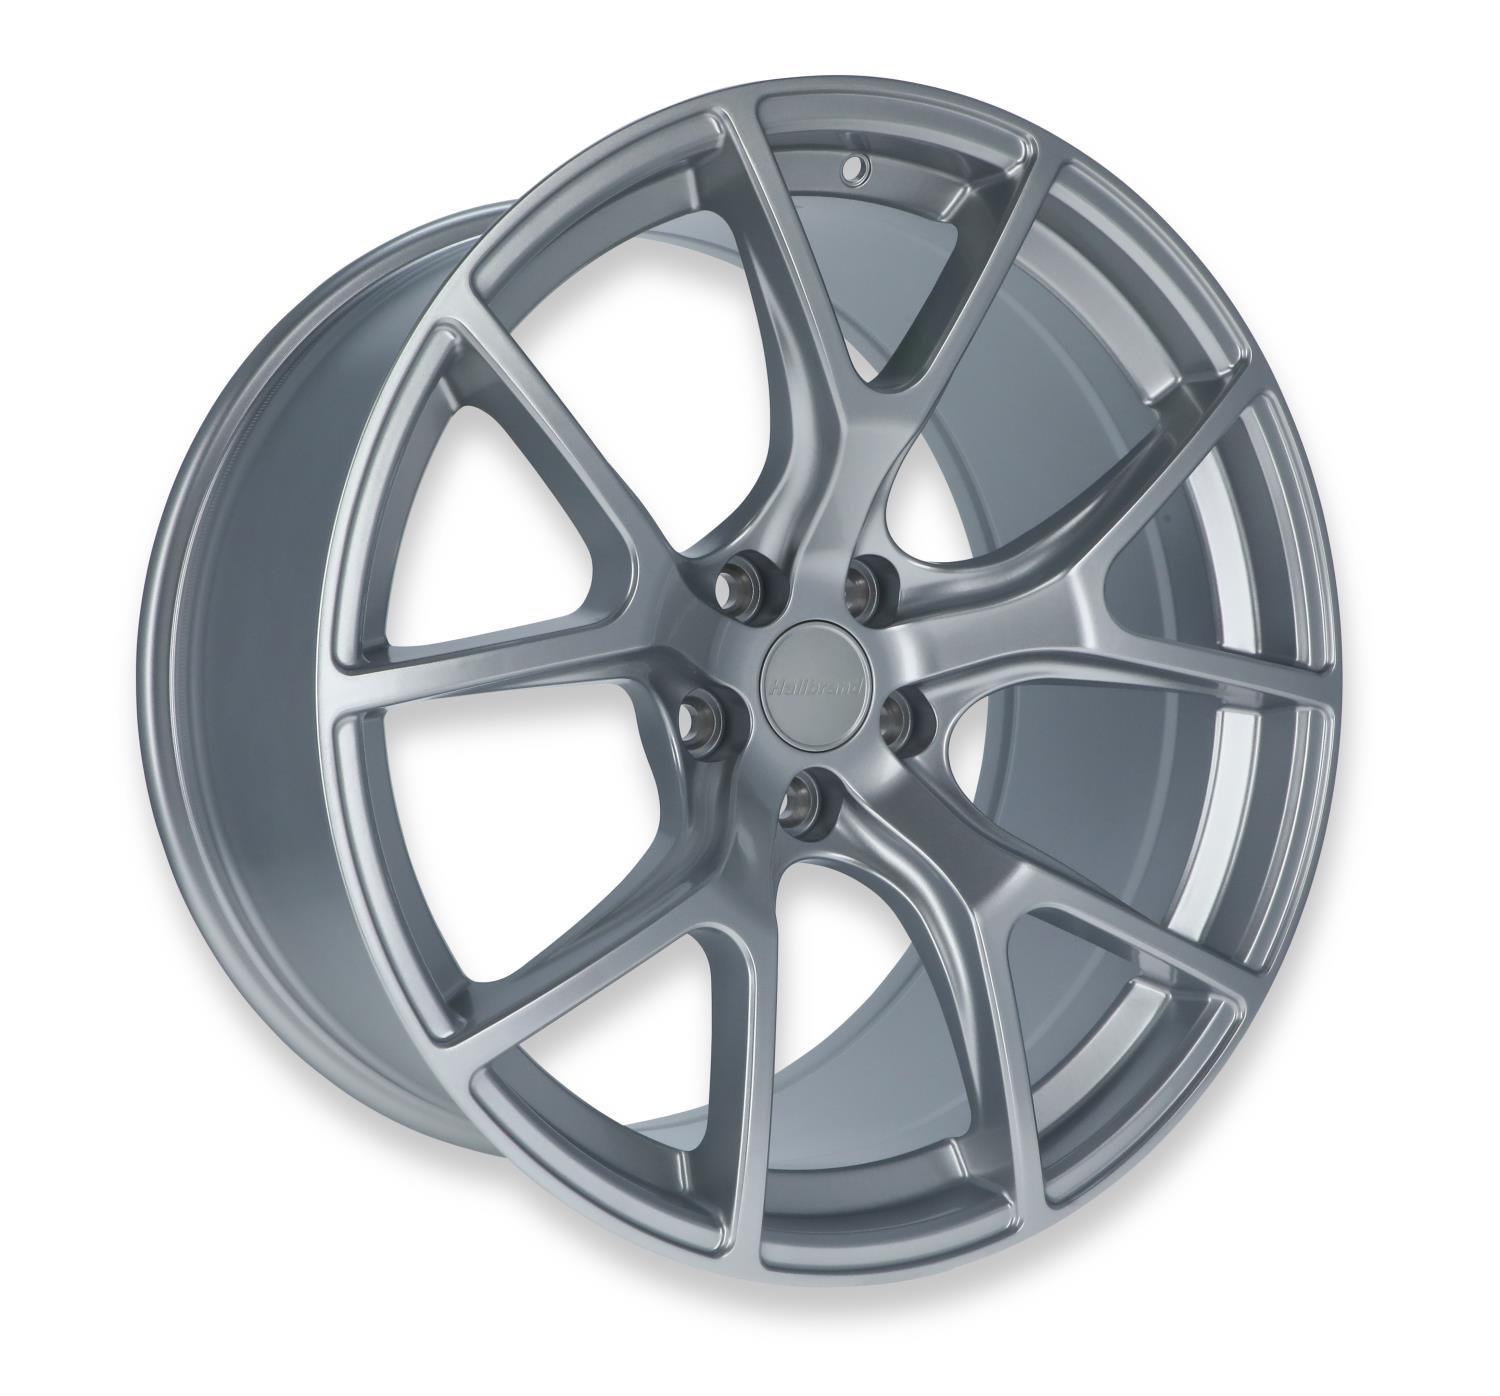 Split-Spoke Rear Wheel, Size: 20x10.5", Bolt Pattern: 5x115", Backspace: 6.73" [Gloss Silver]